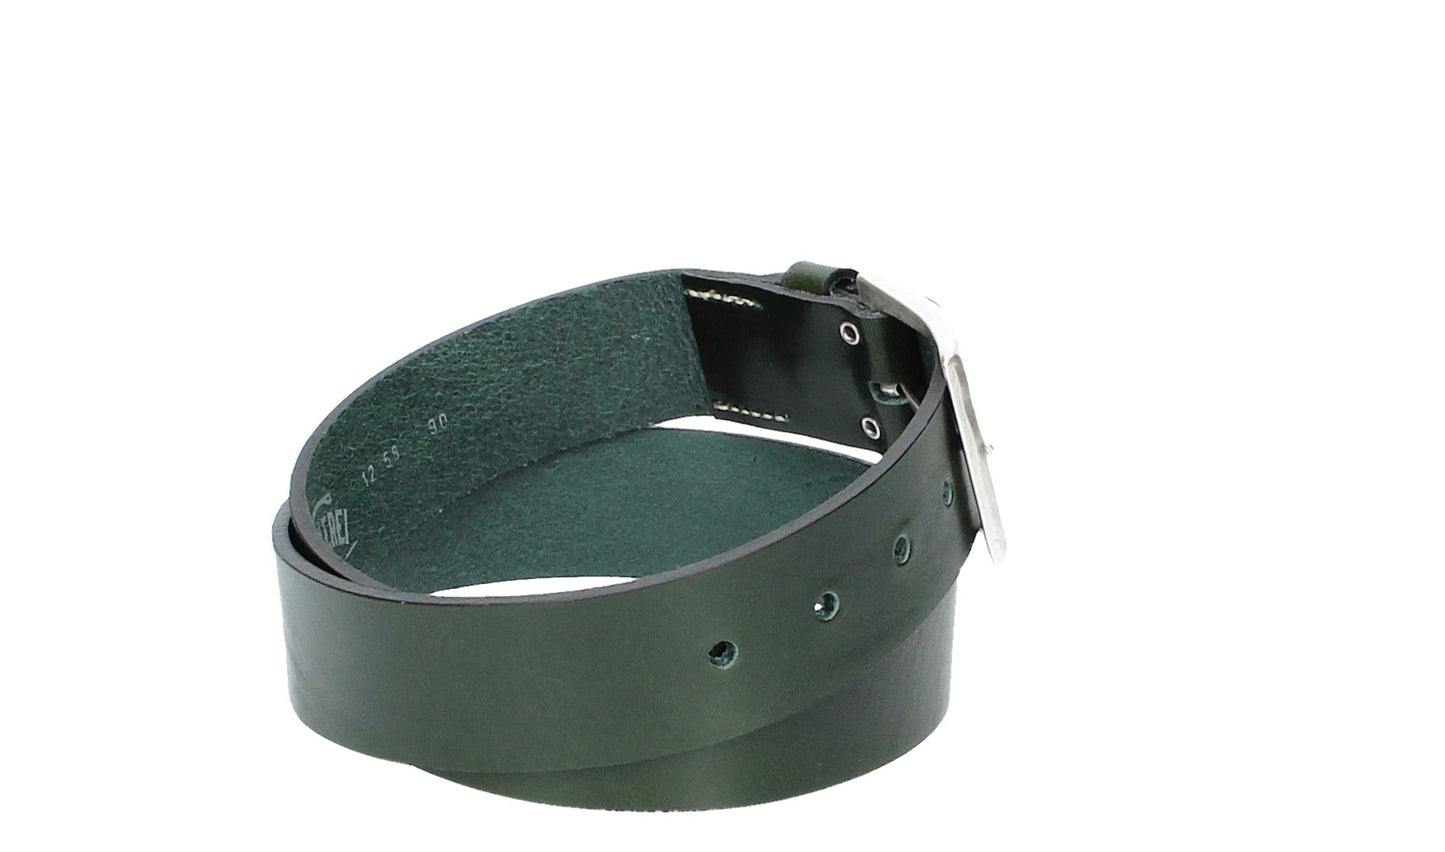 Hochwertiger Ledergürtel 40mm in Grün mit rustikaler Schließe in Silber